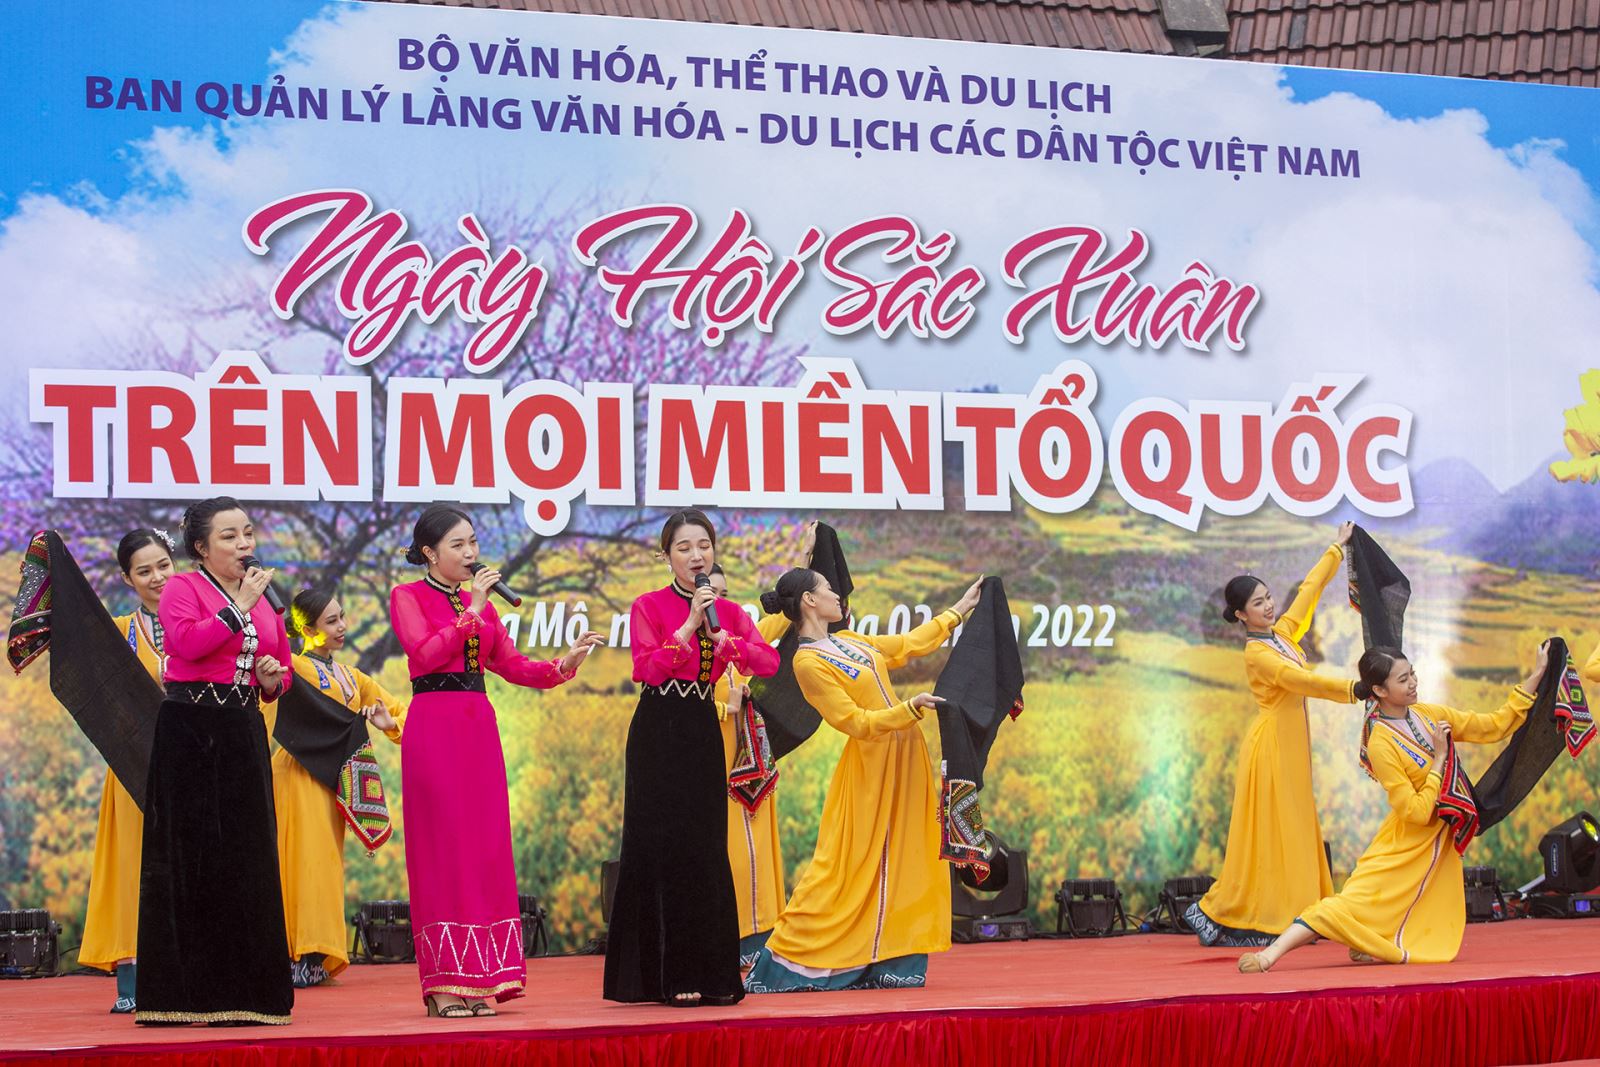  “Sắc Xuân trên mọi miền Tổ quốc” tại Làng Văn hóa - Du lịch các dân tộc Việt Nam